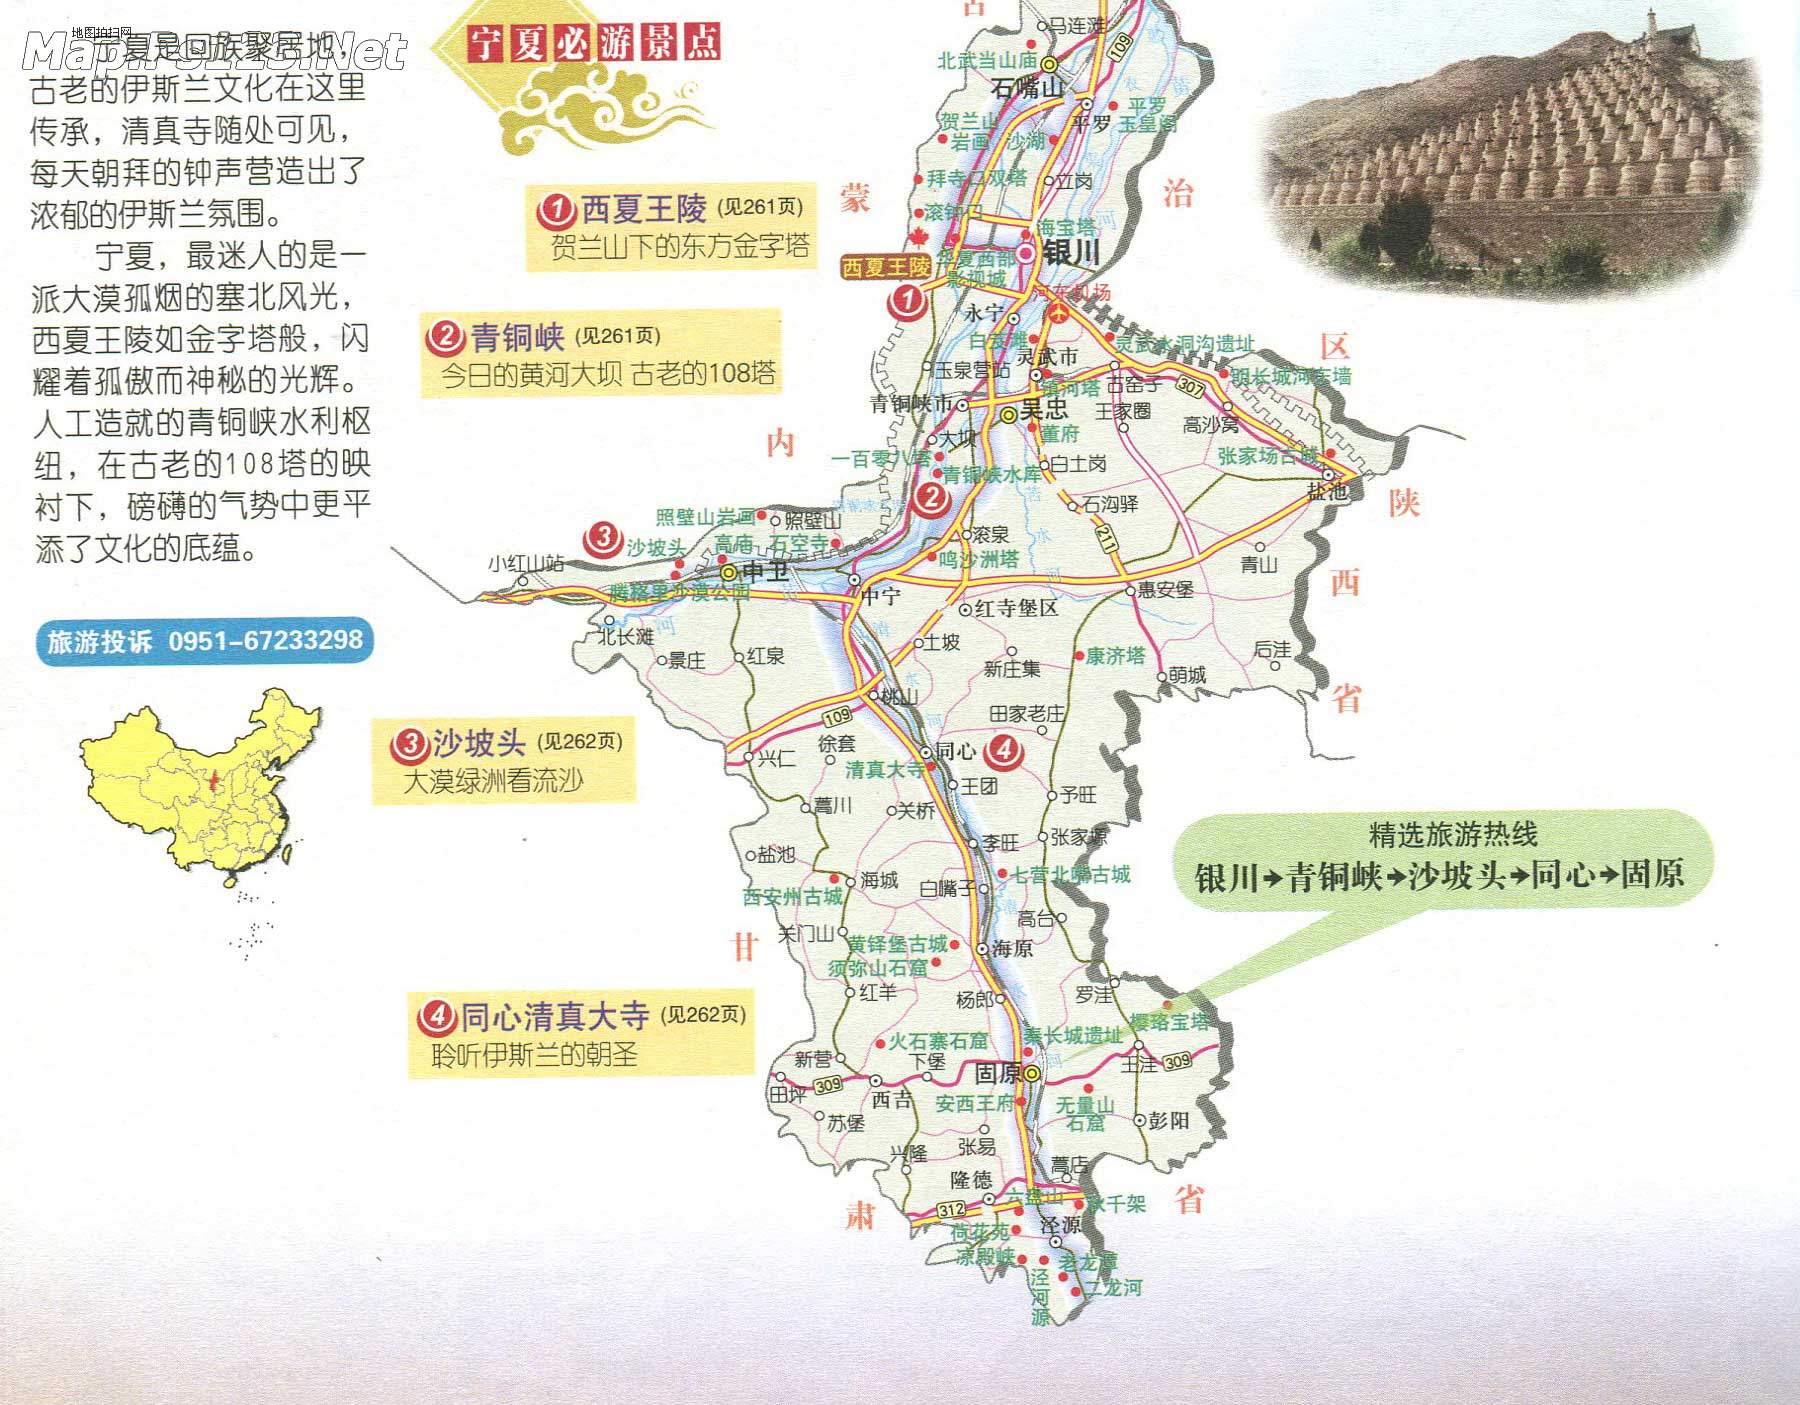 宁夏旅游 >> 宁夏旅游地图(必游景点)  景点导航:世界旅游  中国旅游图片